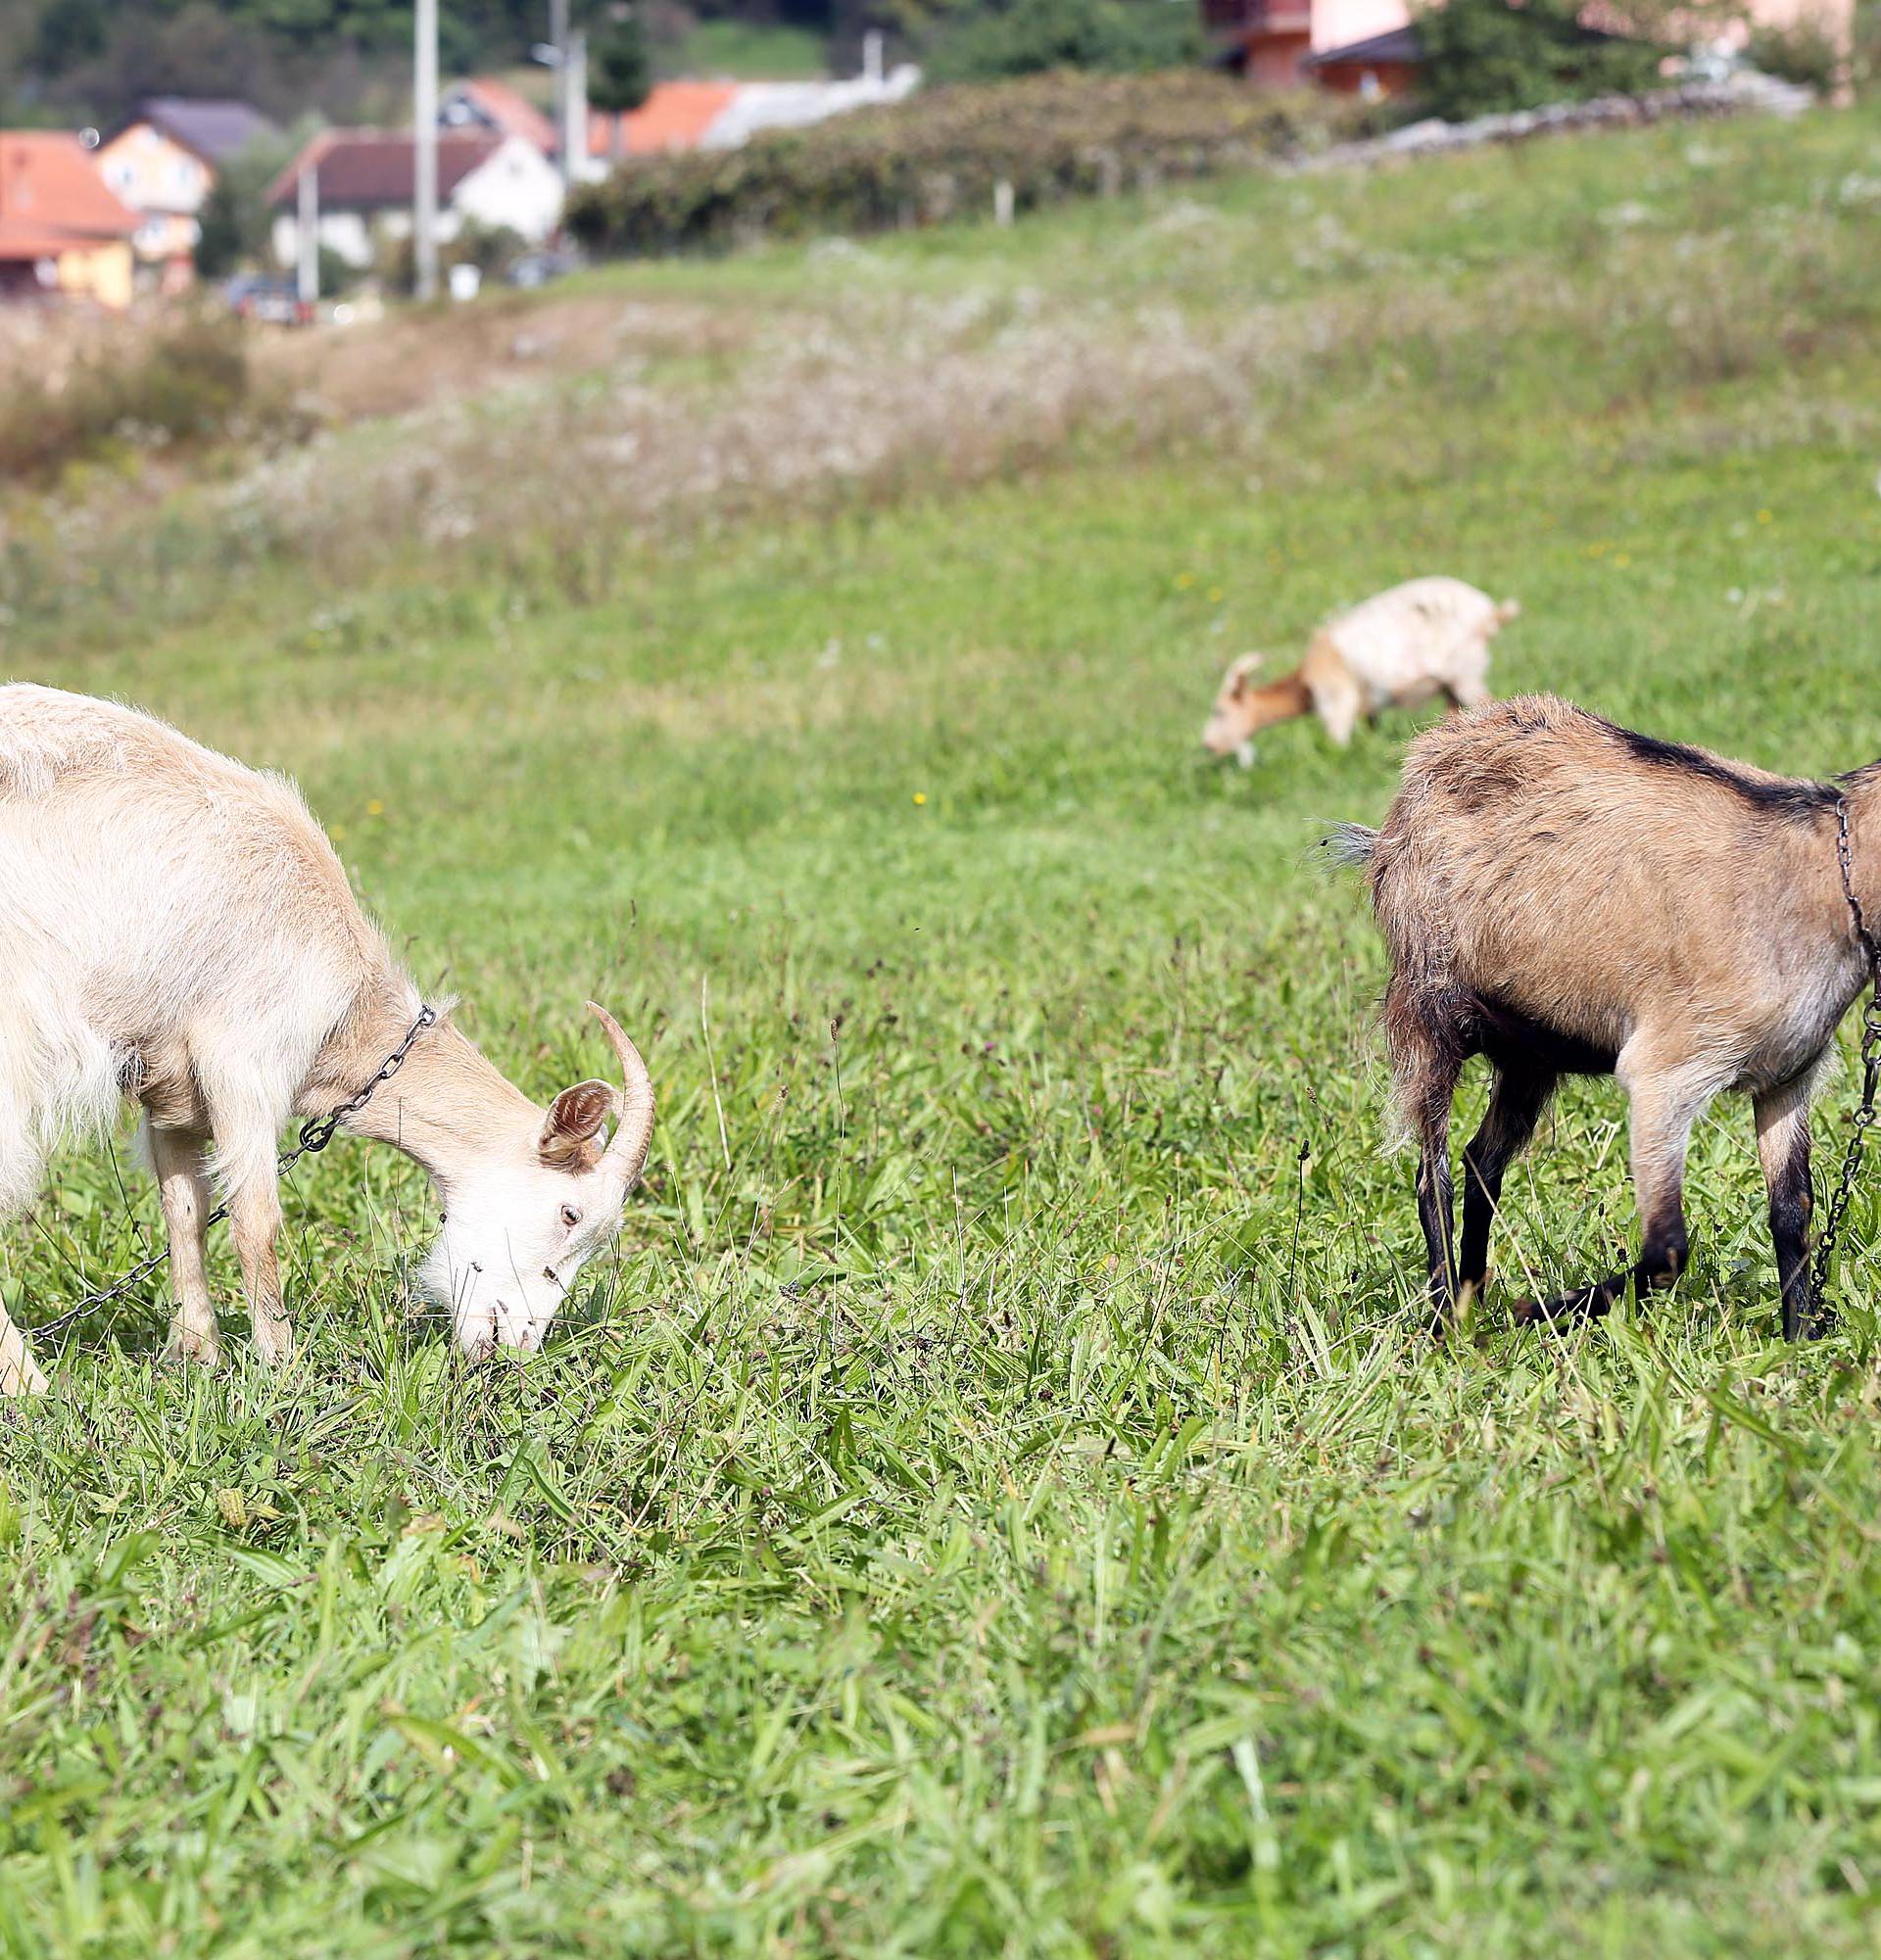 Rastaje se teška srca: Moje koze trebaju dom, pomozite mi